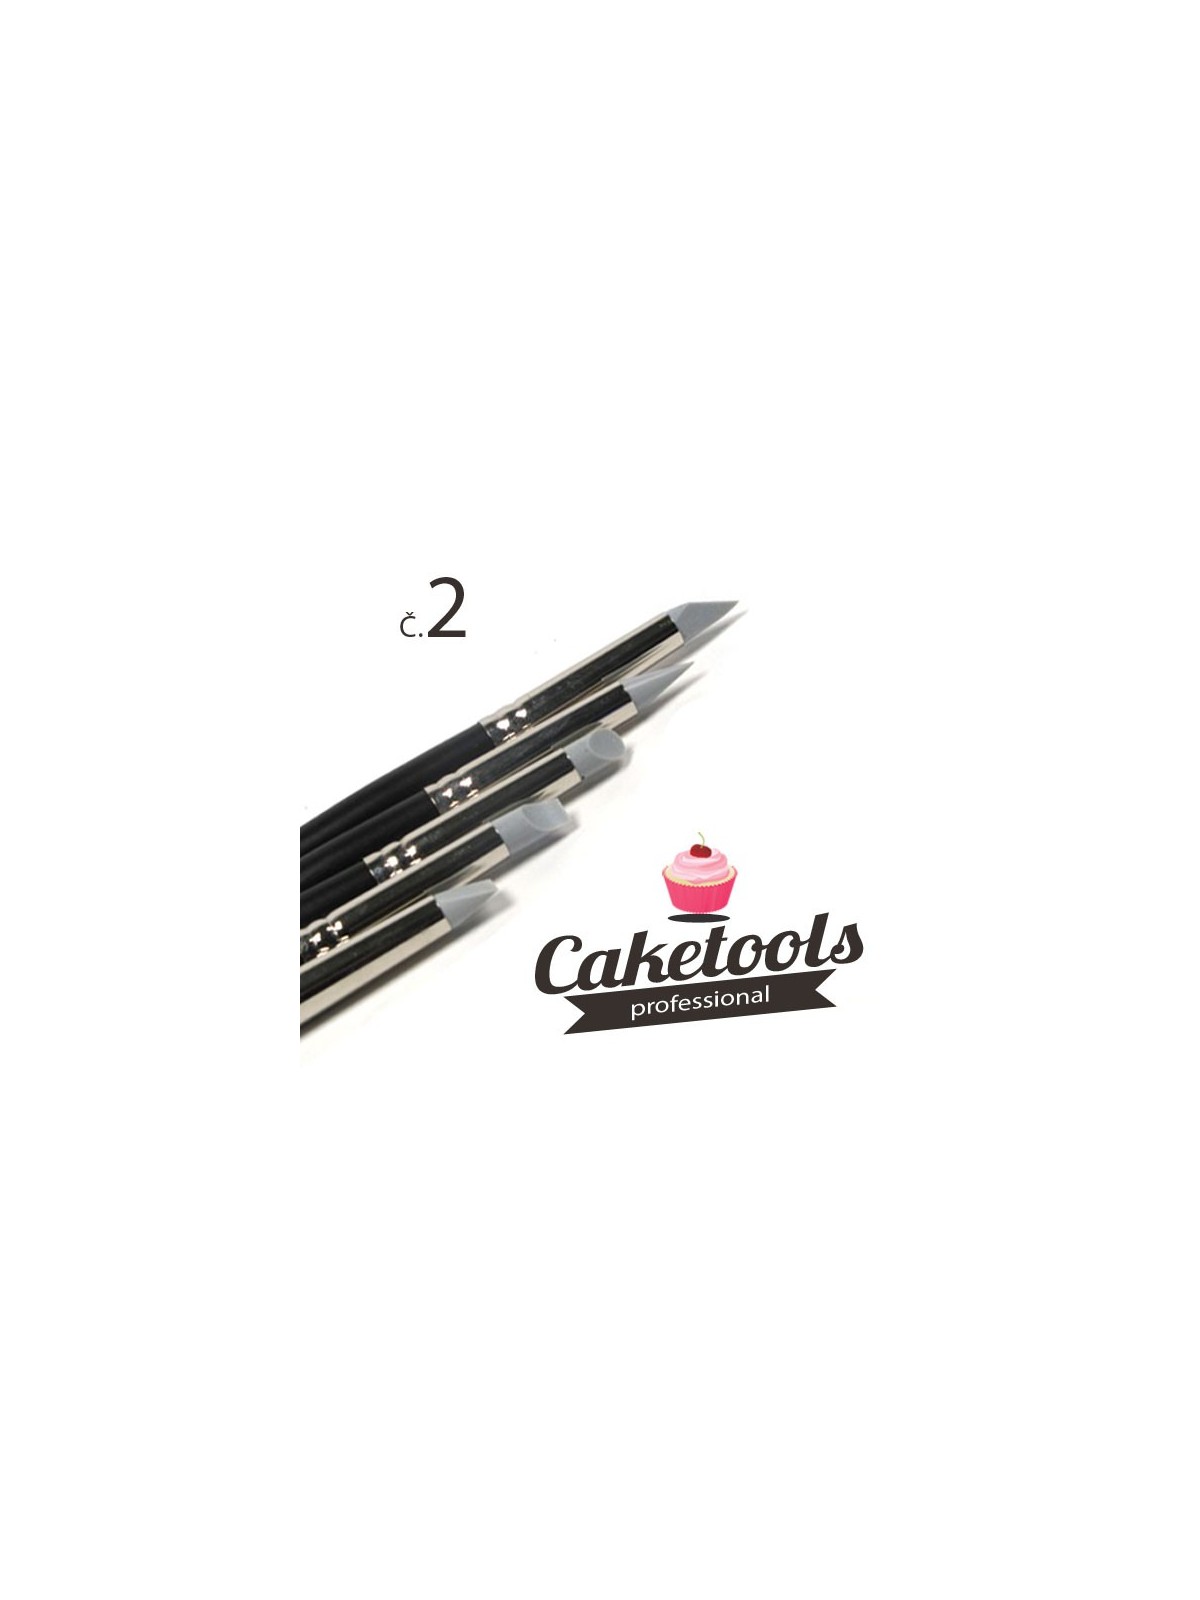 Caketools - set of silicone brushes - size 2